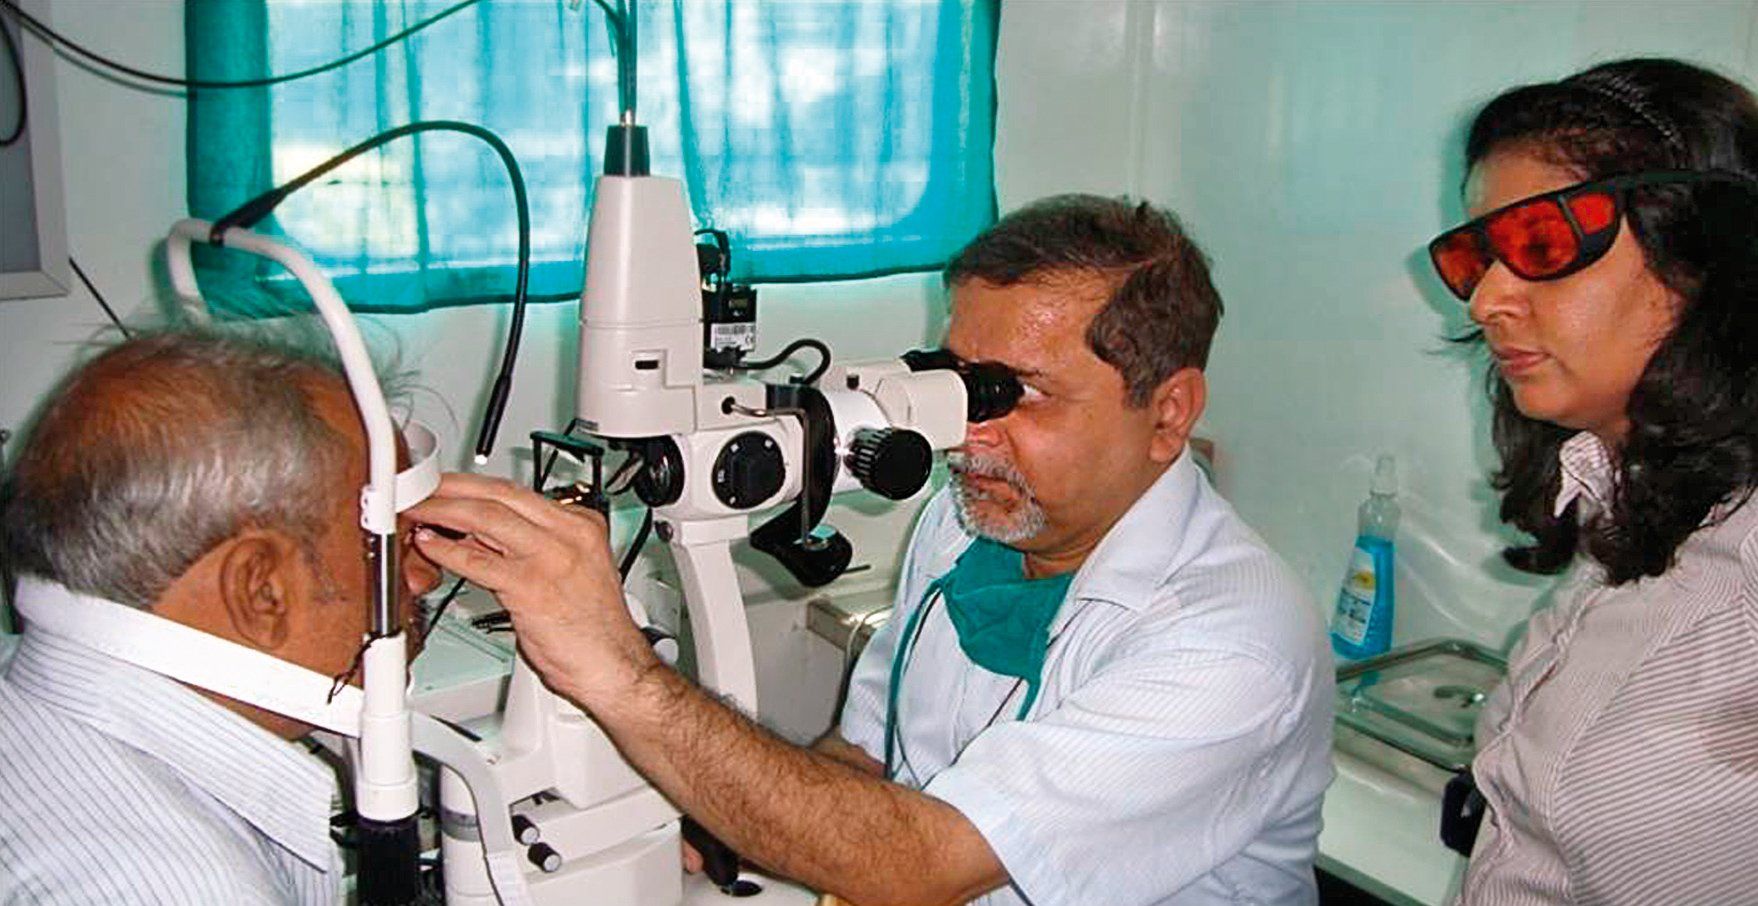 Βαθμολογία των καλύτερων οφθαλμολογικών κλινικών στο Ροστόφ Ον Ντον το 2020